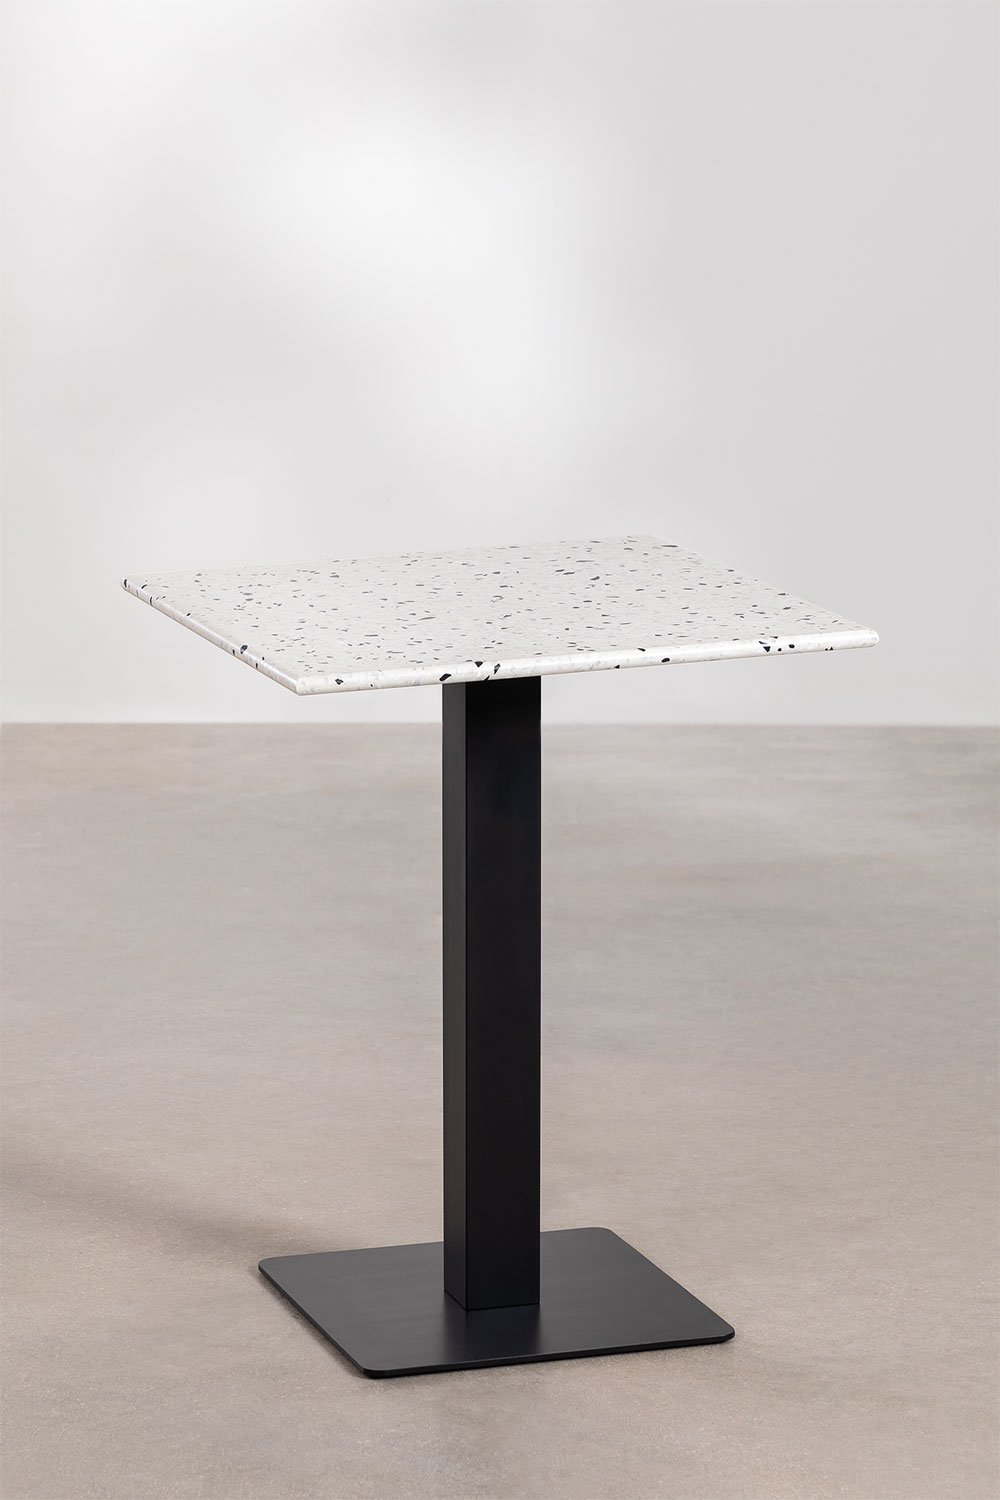 Kwadratowy stolik barowy z lastryko (60x60 cm) Praline, obrazek w galerii 1